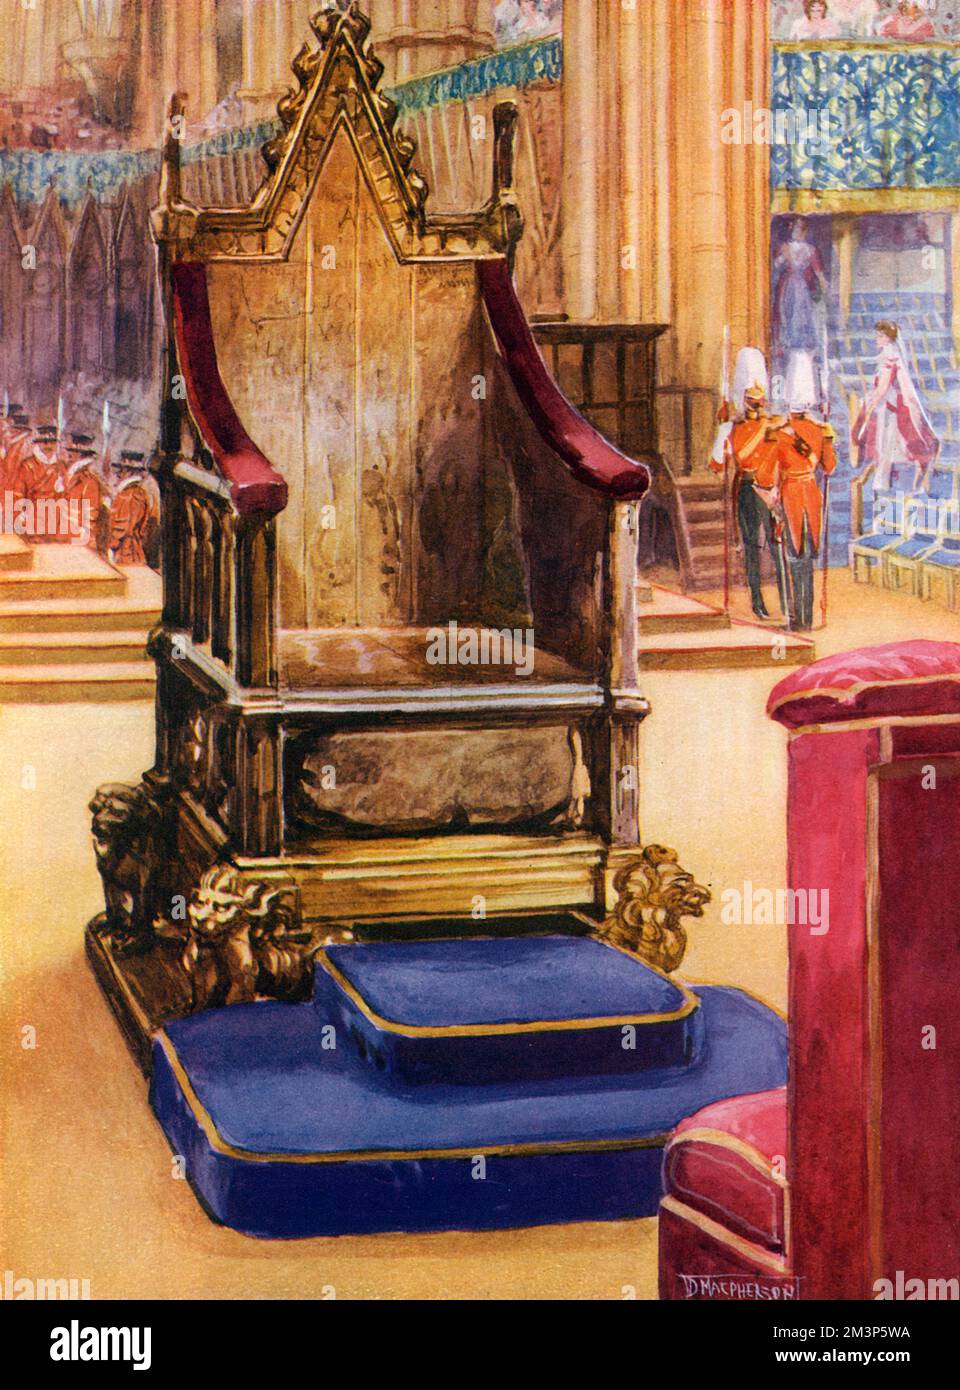 Der Krönungsstuhl, auch bekannt als König Edwards Stuhl, in Westminster Abbey, London, kurz vor der Krönung von König George V. Er wurde 1301 von König Edward I. beauftragt, den Krönungsstein Schottlands, bekannt als der Stein des Scone, zu enthalten, den er aus den Schotten gefangen nahm. Der Stuhl wurde nach Englands einzigem heiligen König benannt, Edward dem Konfessor. Es wurde aus Eiche geschnitzt -- die vier vergoldeten Löwen an ihren Füßen sind spätere Ergänzungen. Datum: 1937 Stockfoto